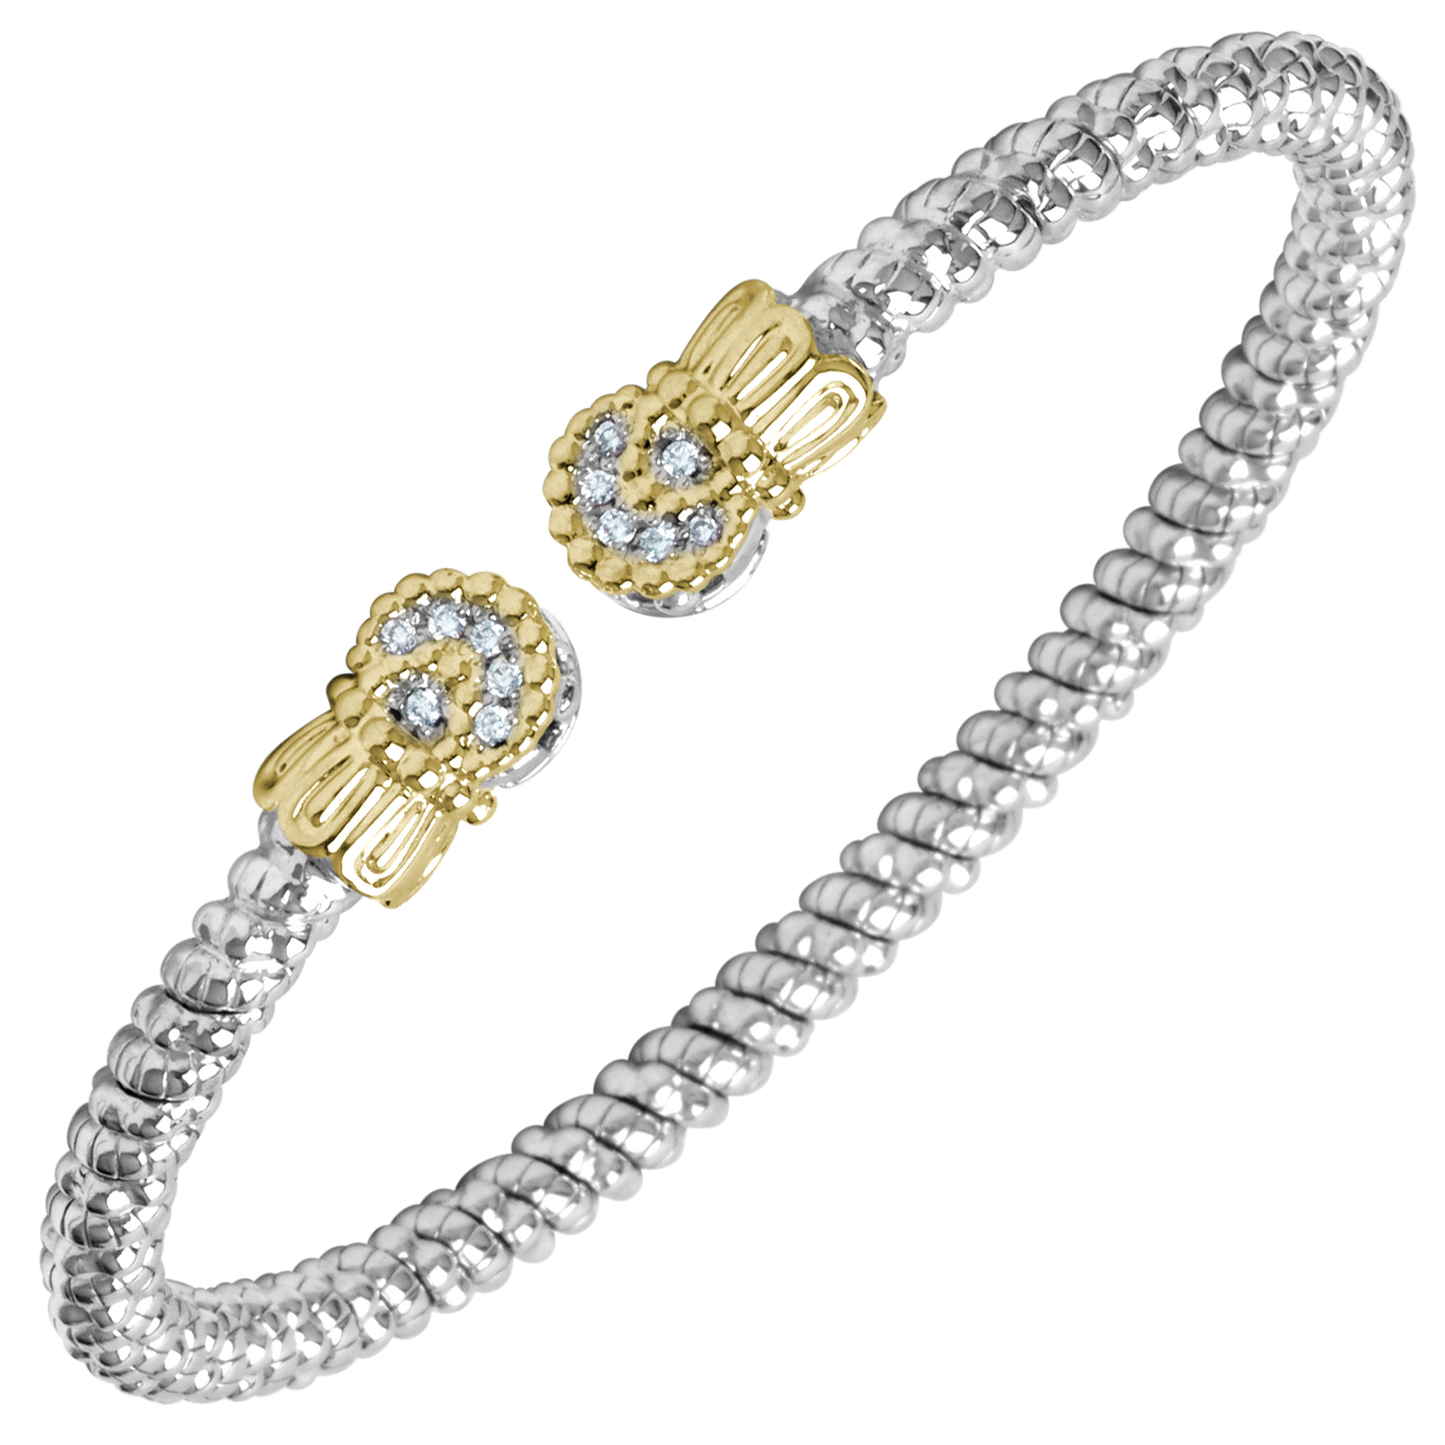 Buy Vahan Bracelets | Sterling Silver & 14K Gold | 0.09cttw Diamonds | 3mm Width | Shop Avonlea Jewelry only at Avonlea Jewelry.